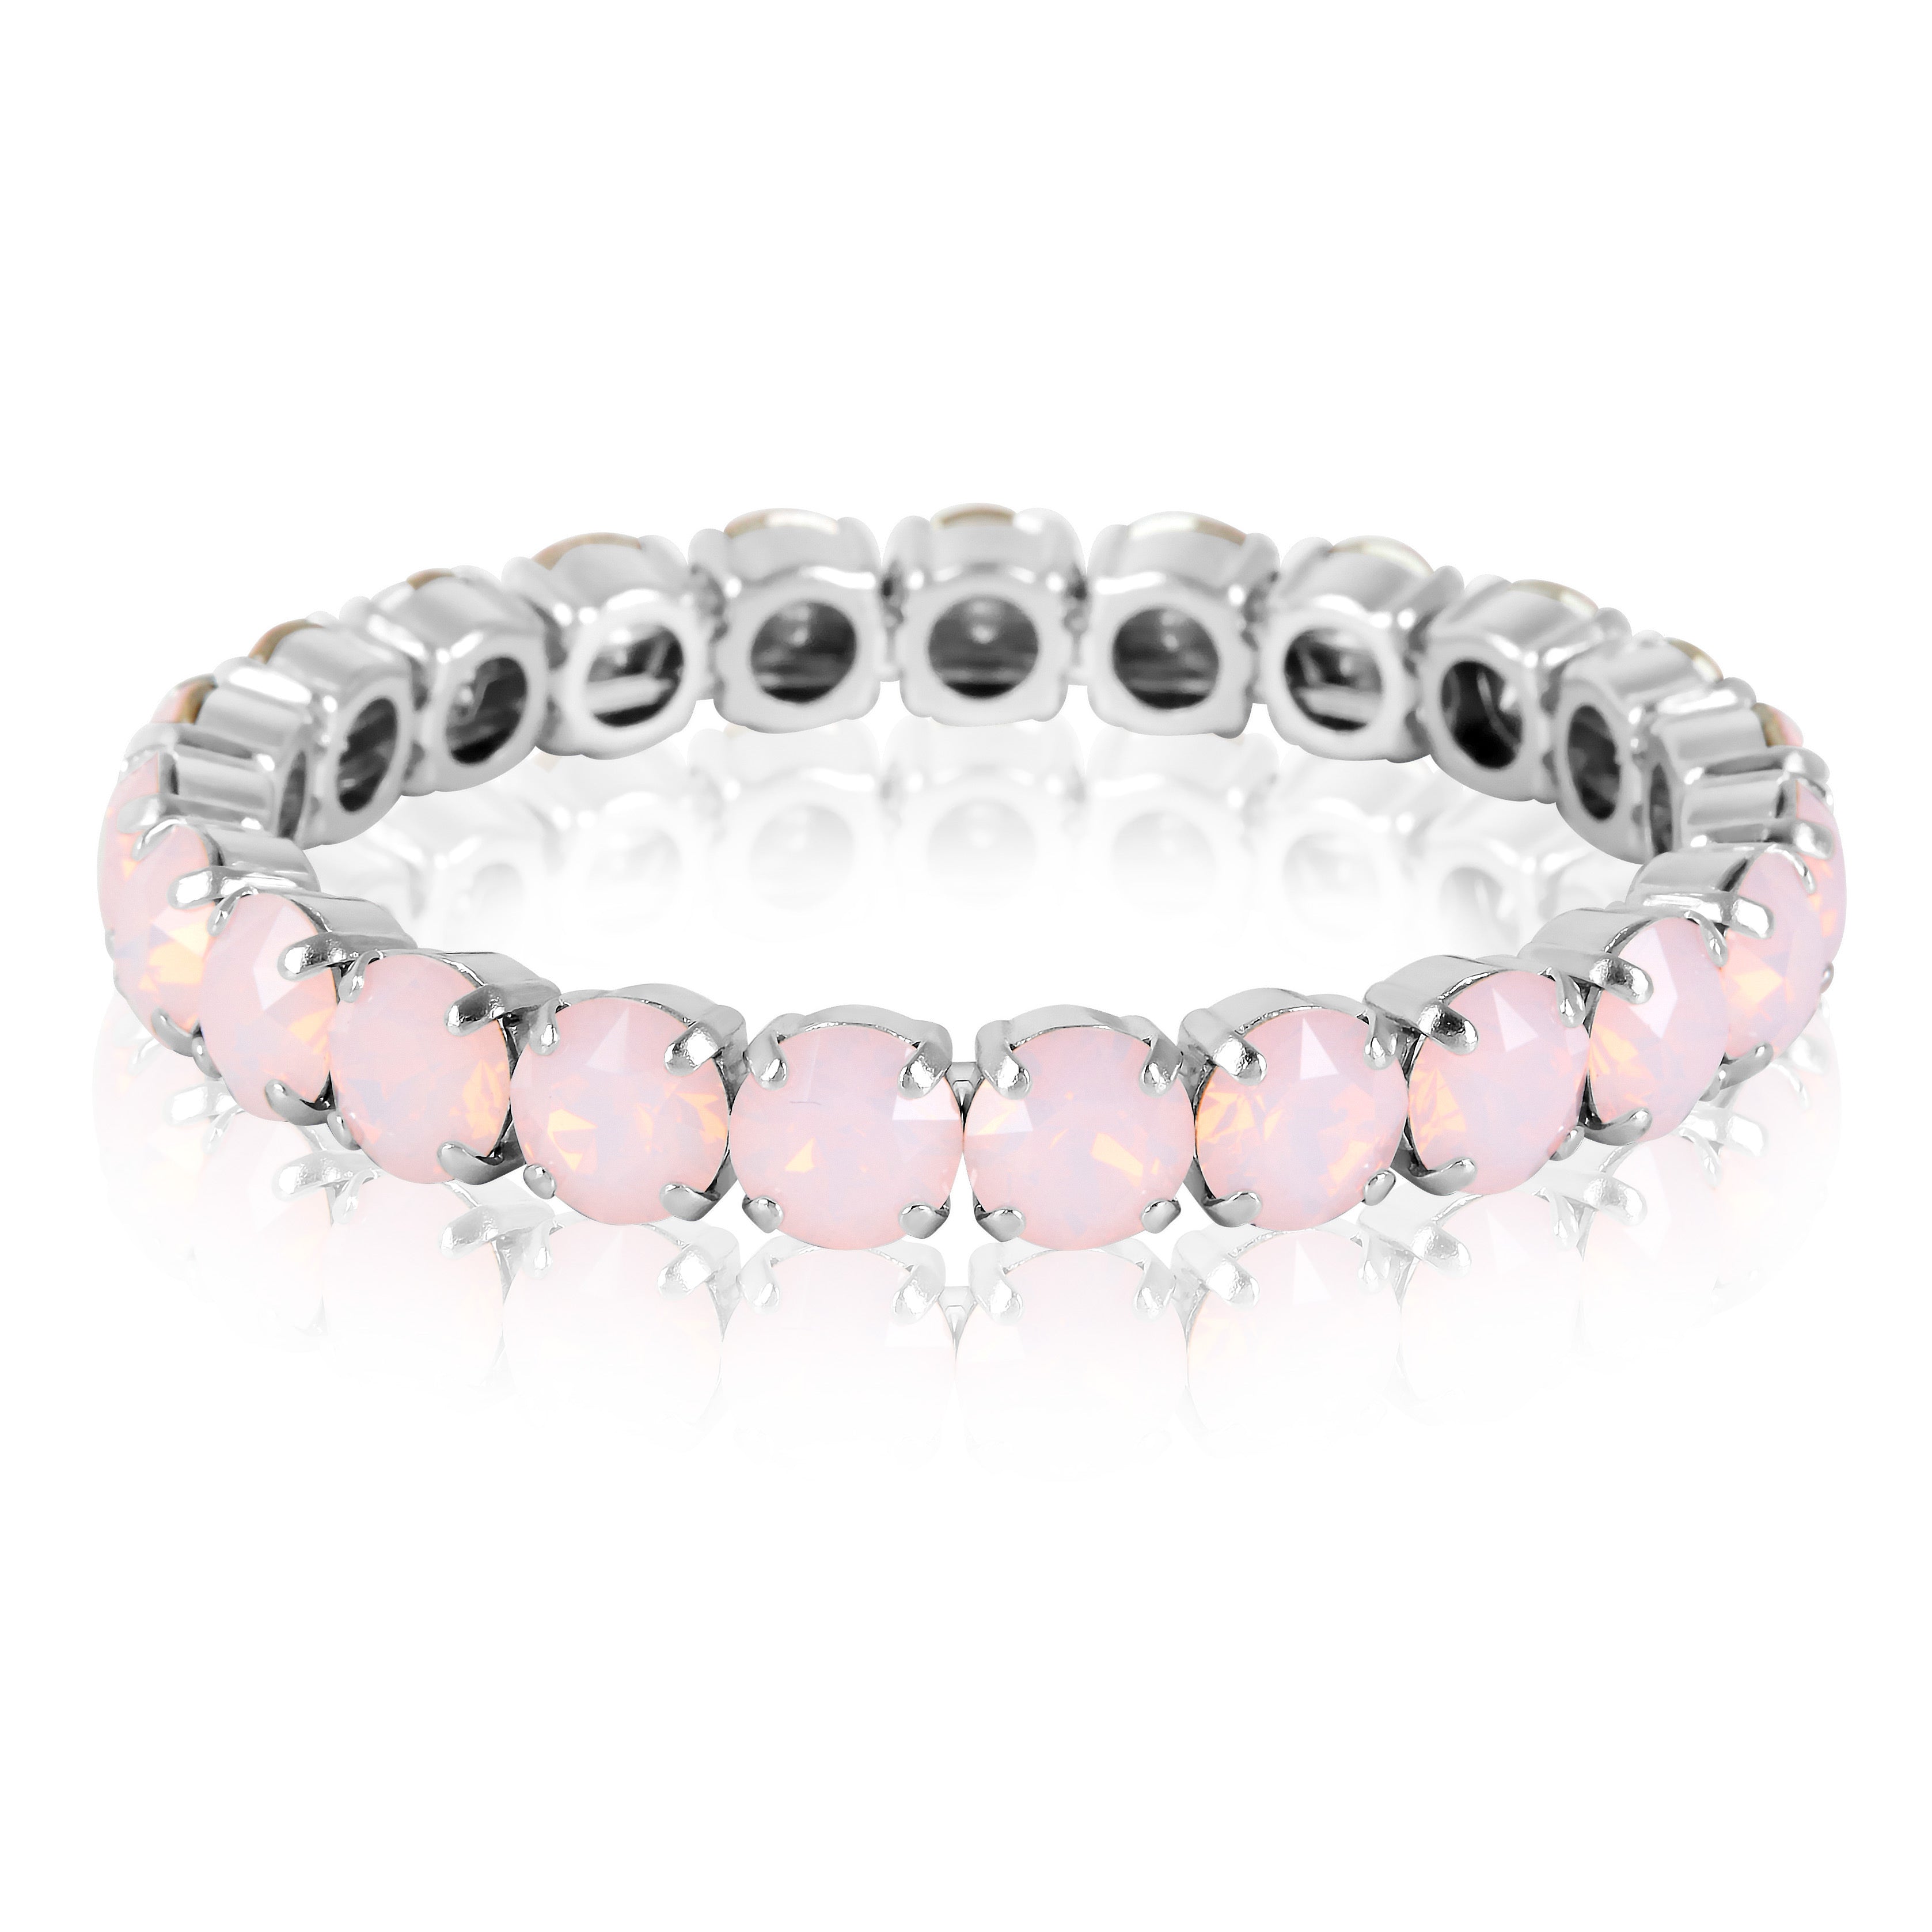 Silver Bracelet, Statement Bracelet, Wedding Bangle, Going Out Bracelet, Swarovski Bracelet, Opal Bracelet, Beautiful Bracelet, Pink Bracelet